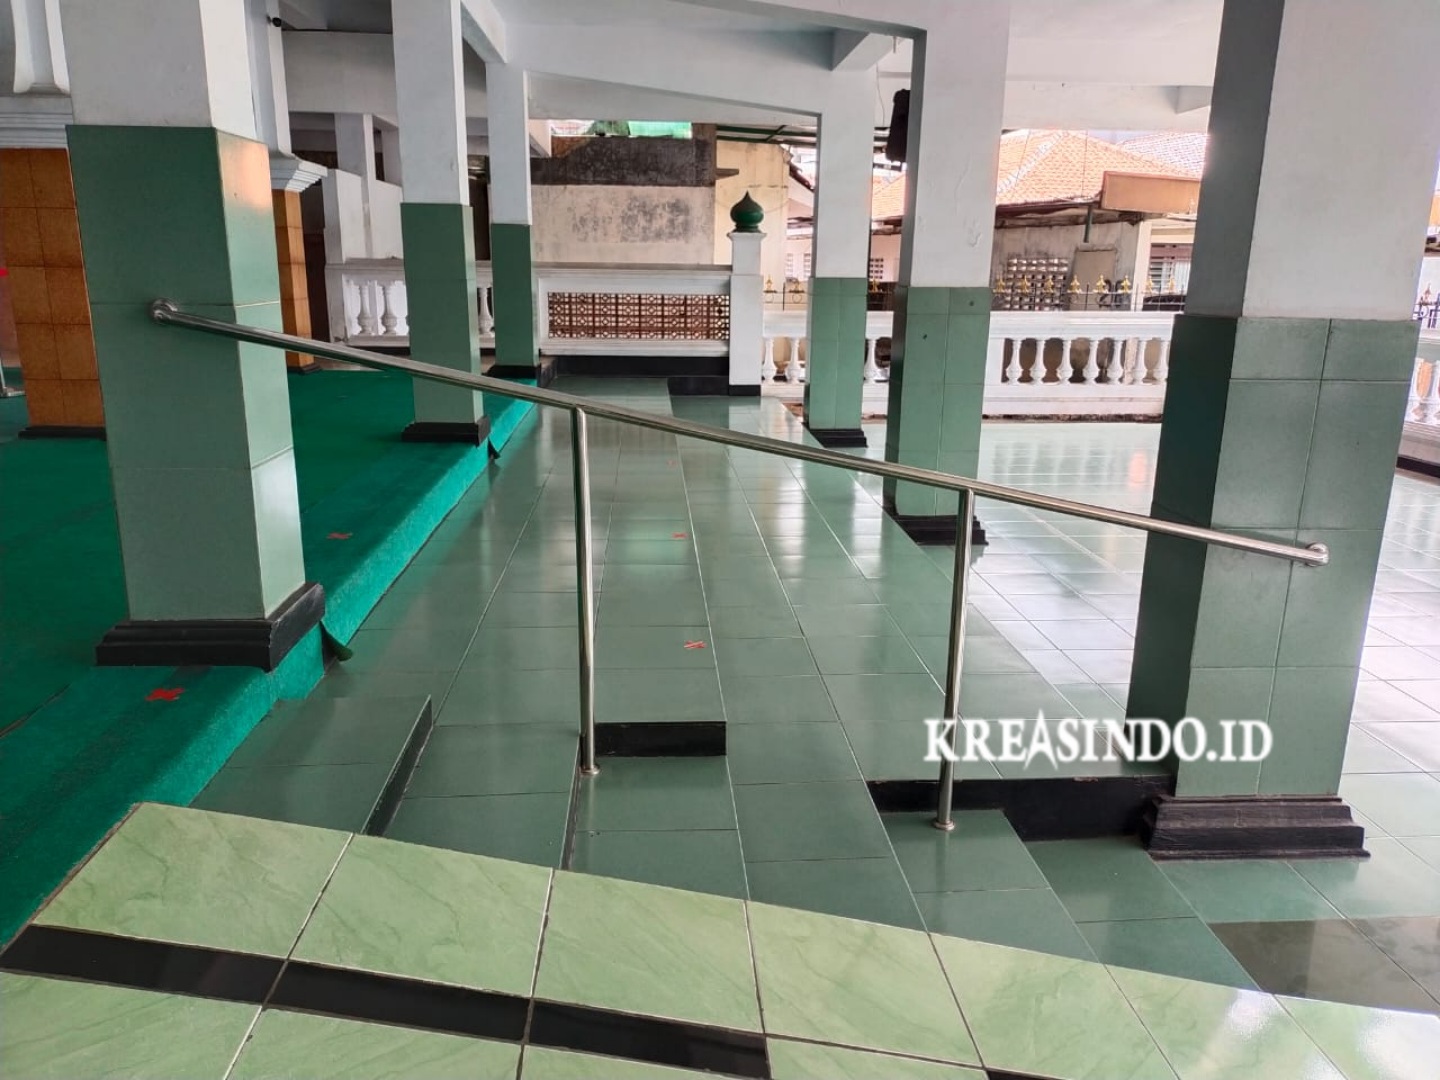 Handrail Tangga Masjid Stainless pesanan Bpk Naufal untuk Masjid Al Ihsan Cilandak Jakarta